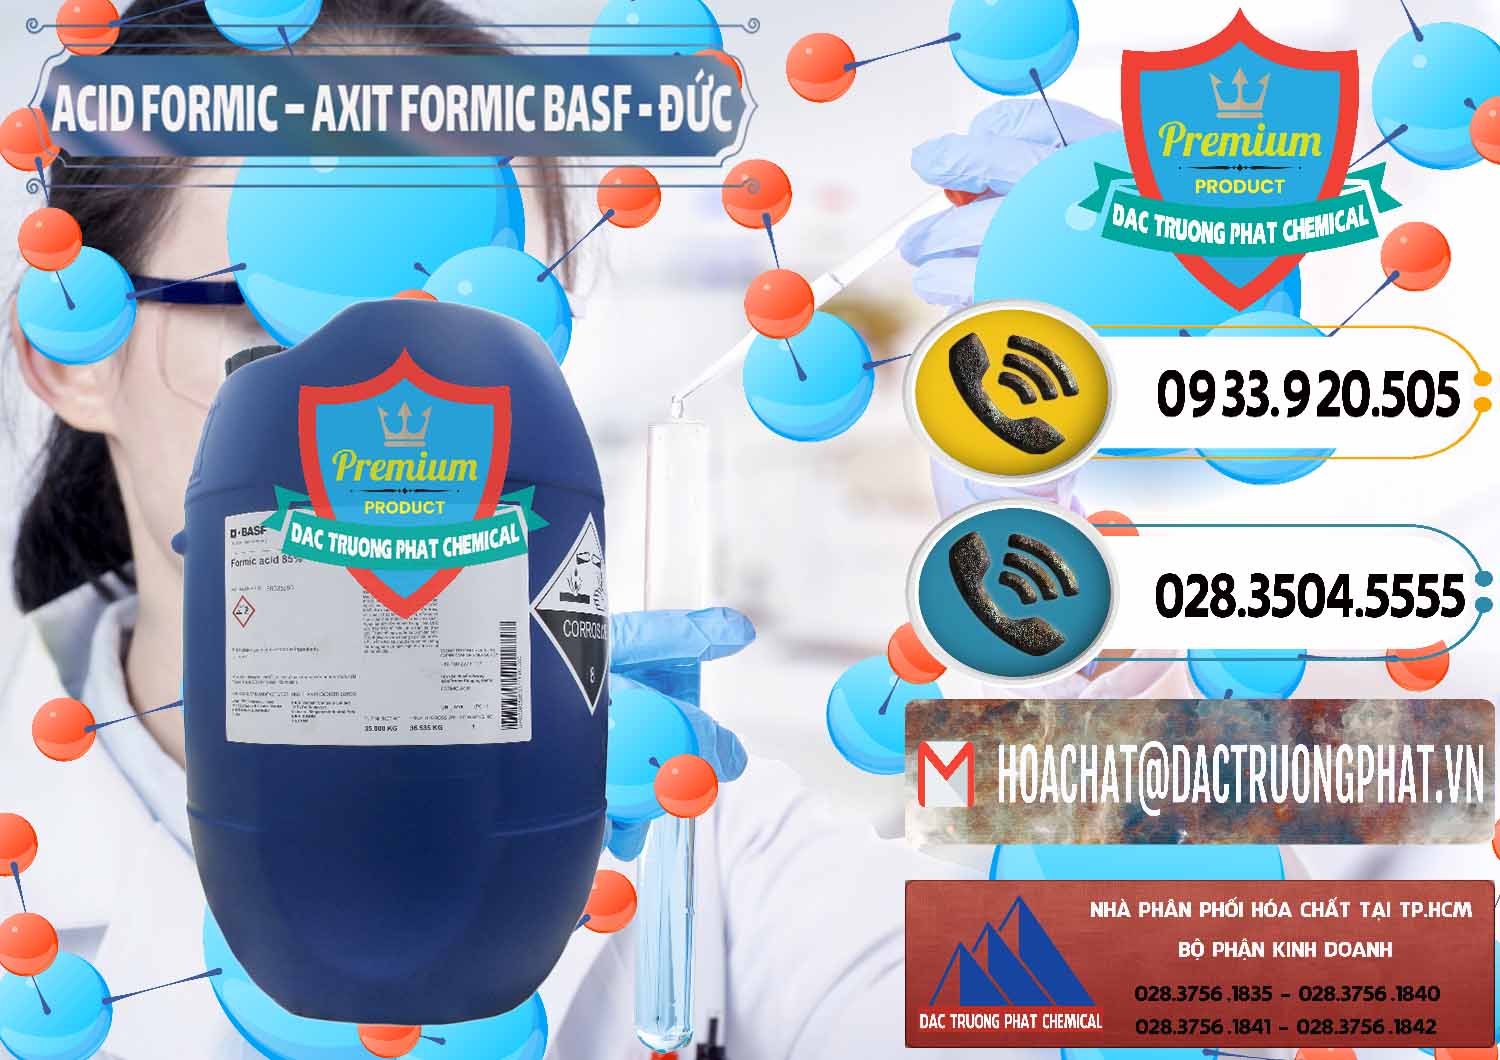 Cty chuyên bán - cung ứng Acid Formic - Axit Formic BASF Đức Germany - 0028 - Nơi cung cấp - bán hóa chất tại TP.HCM - hoachatdetnhuom.vn